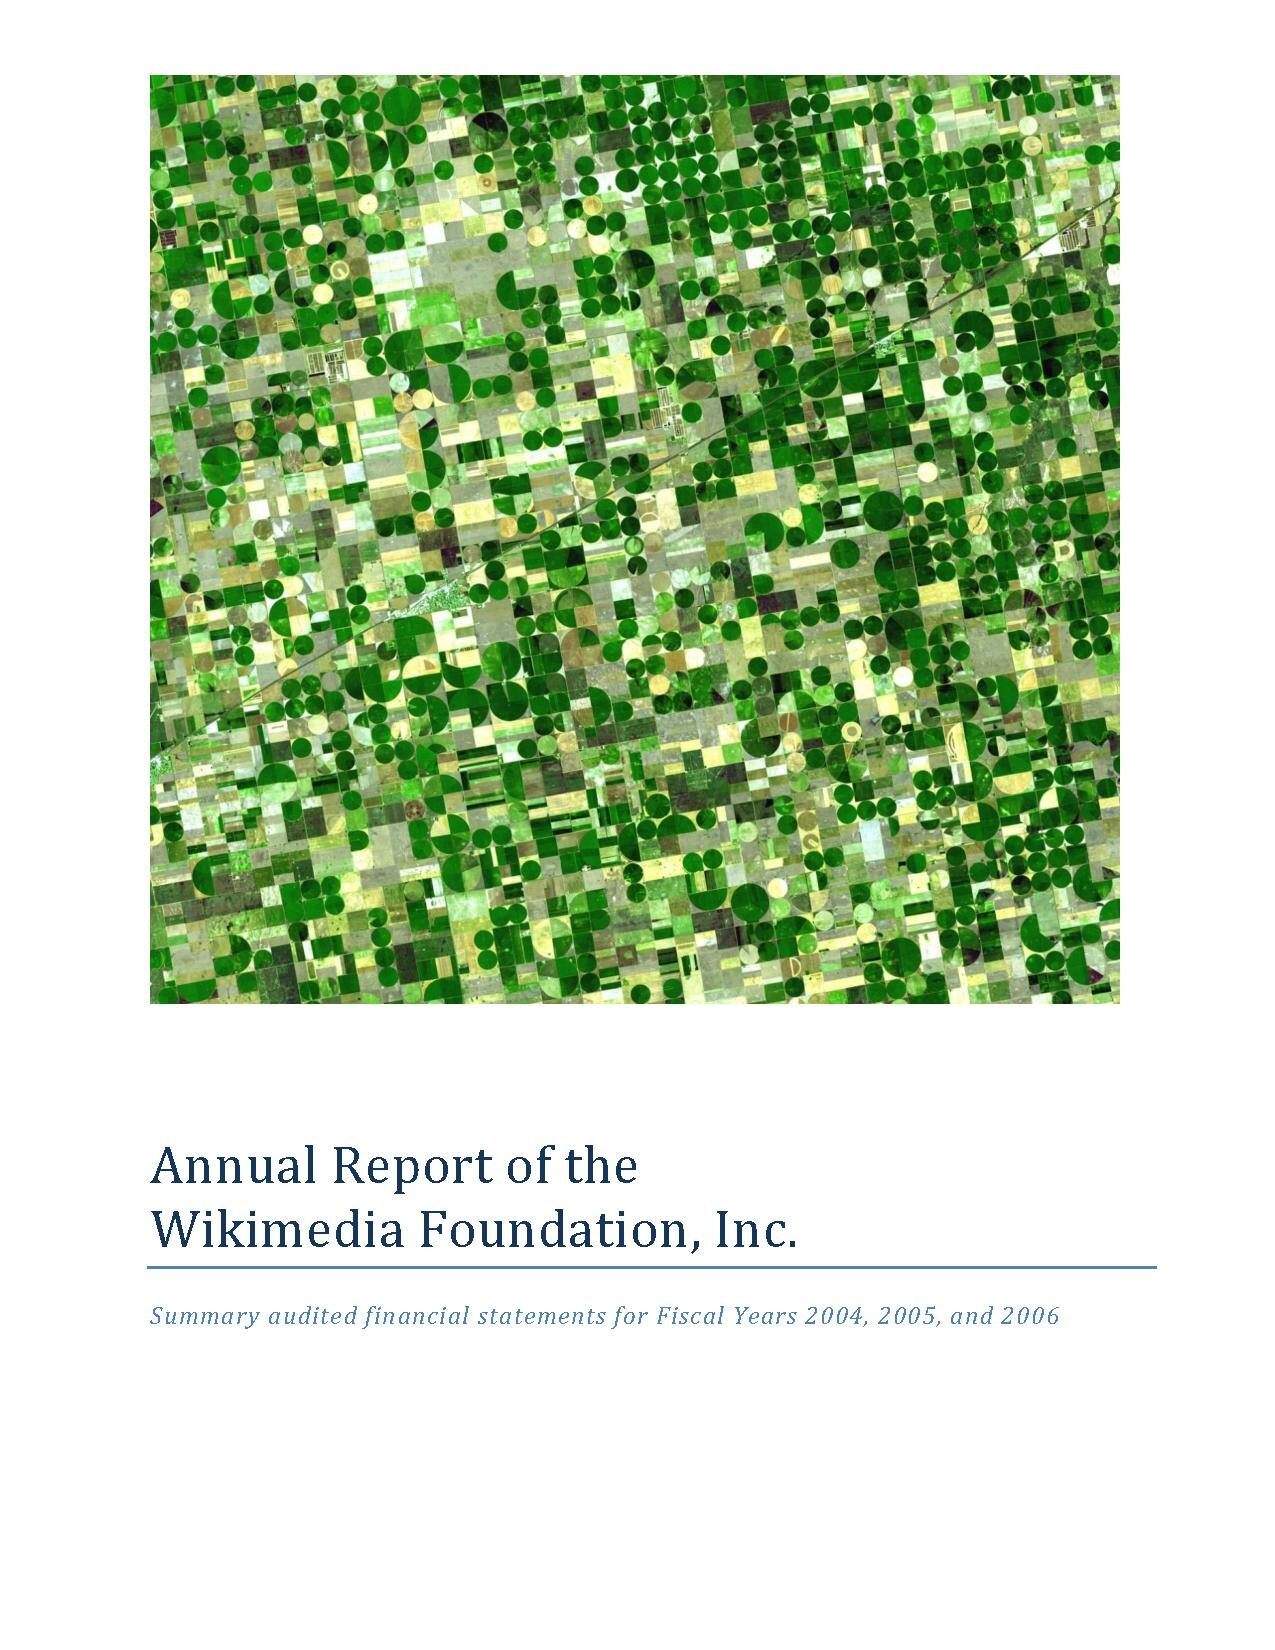 Download File:Mockup Annual Report.pdf - Wikimedia Foundation